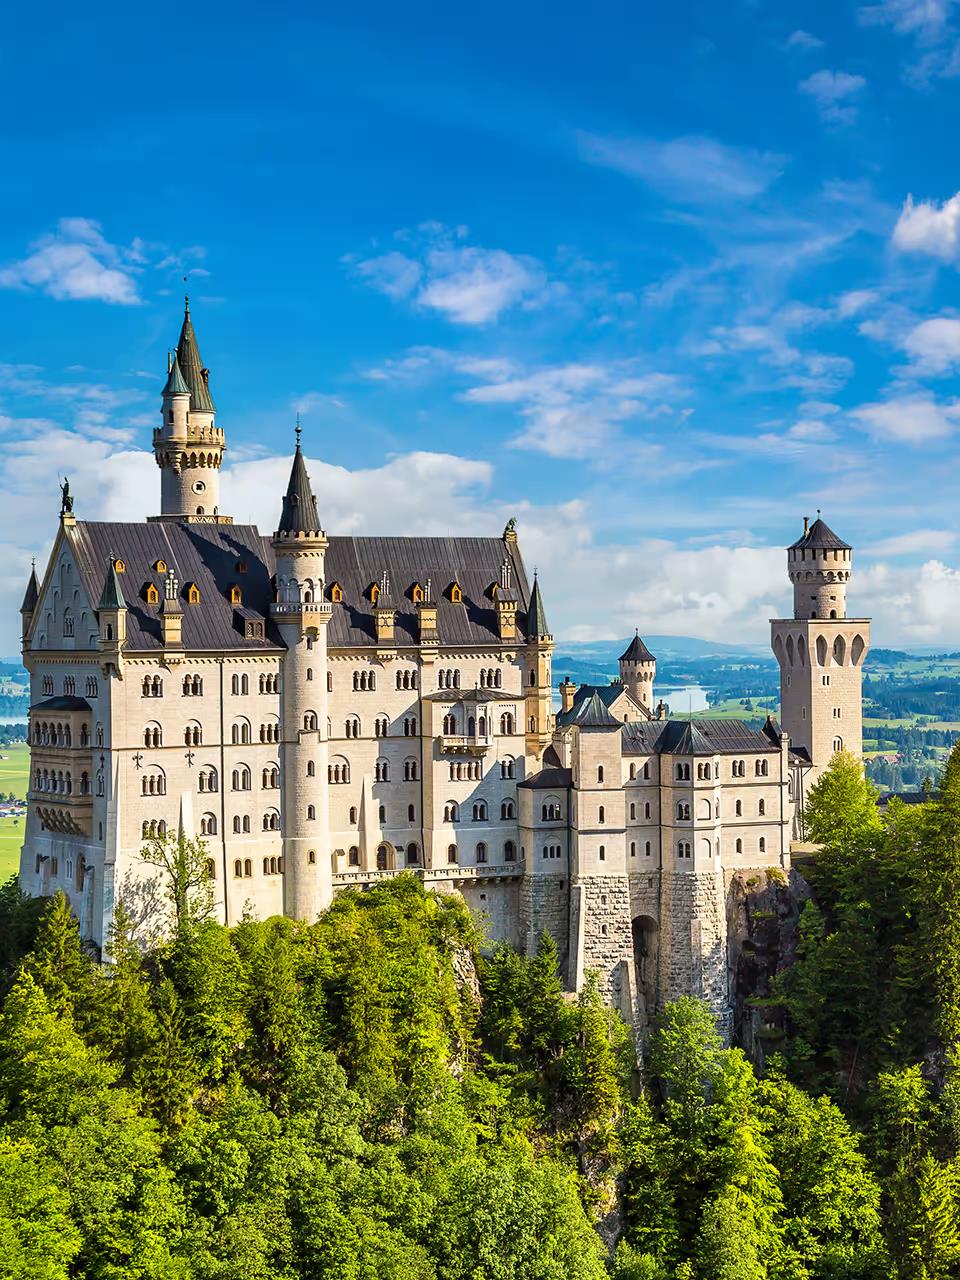 欧洲旅游|德国旅游打卡, 犹如童话世界让人向往